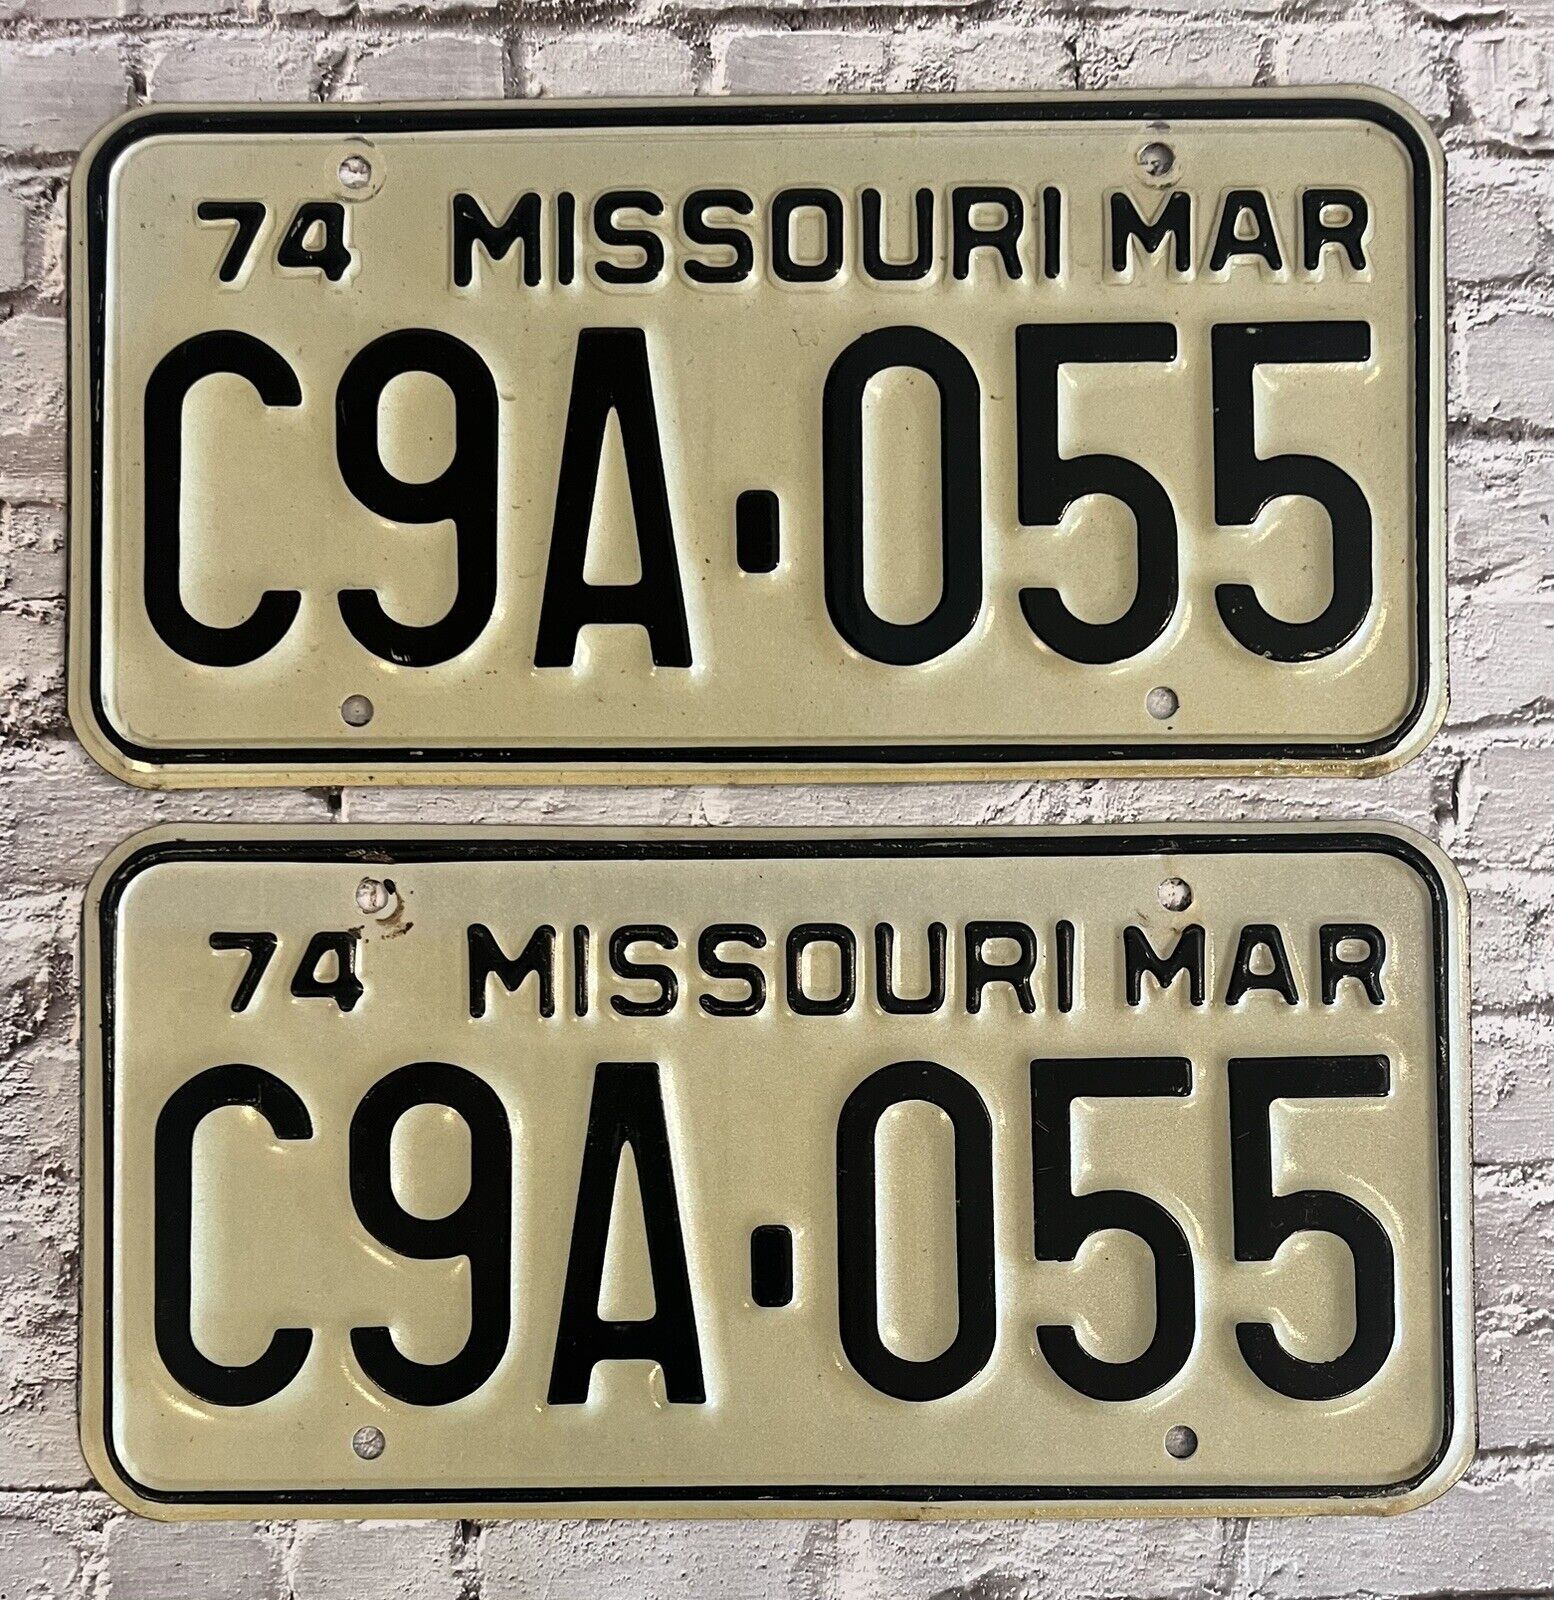 1974 Missouri Automobile License Plate Matched Pair / Set C9A-055